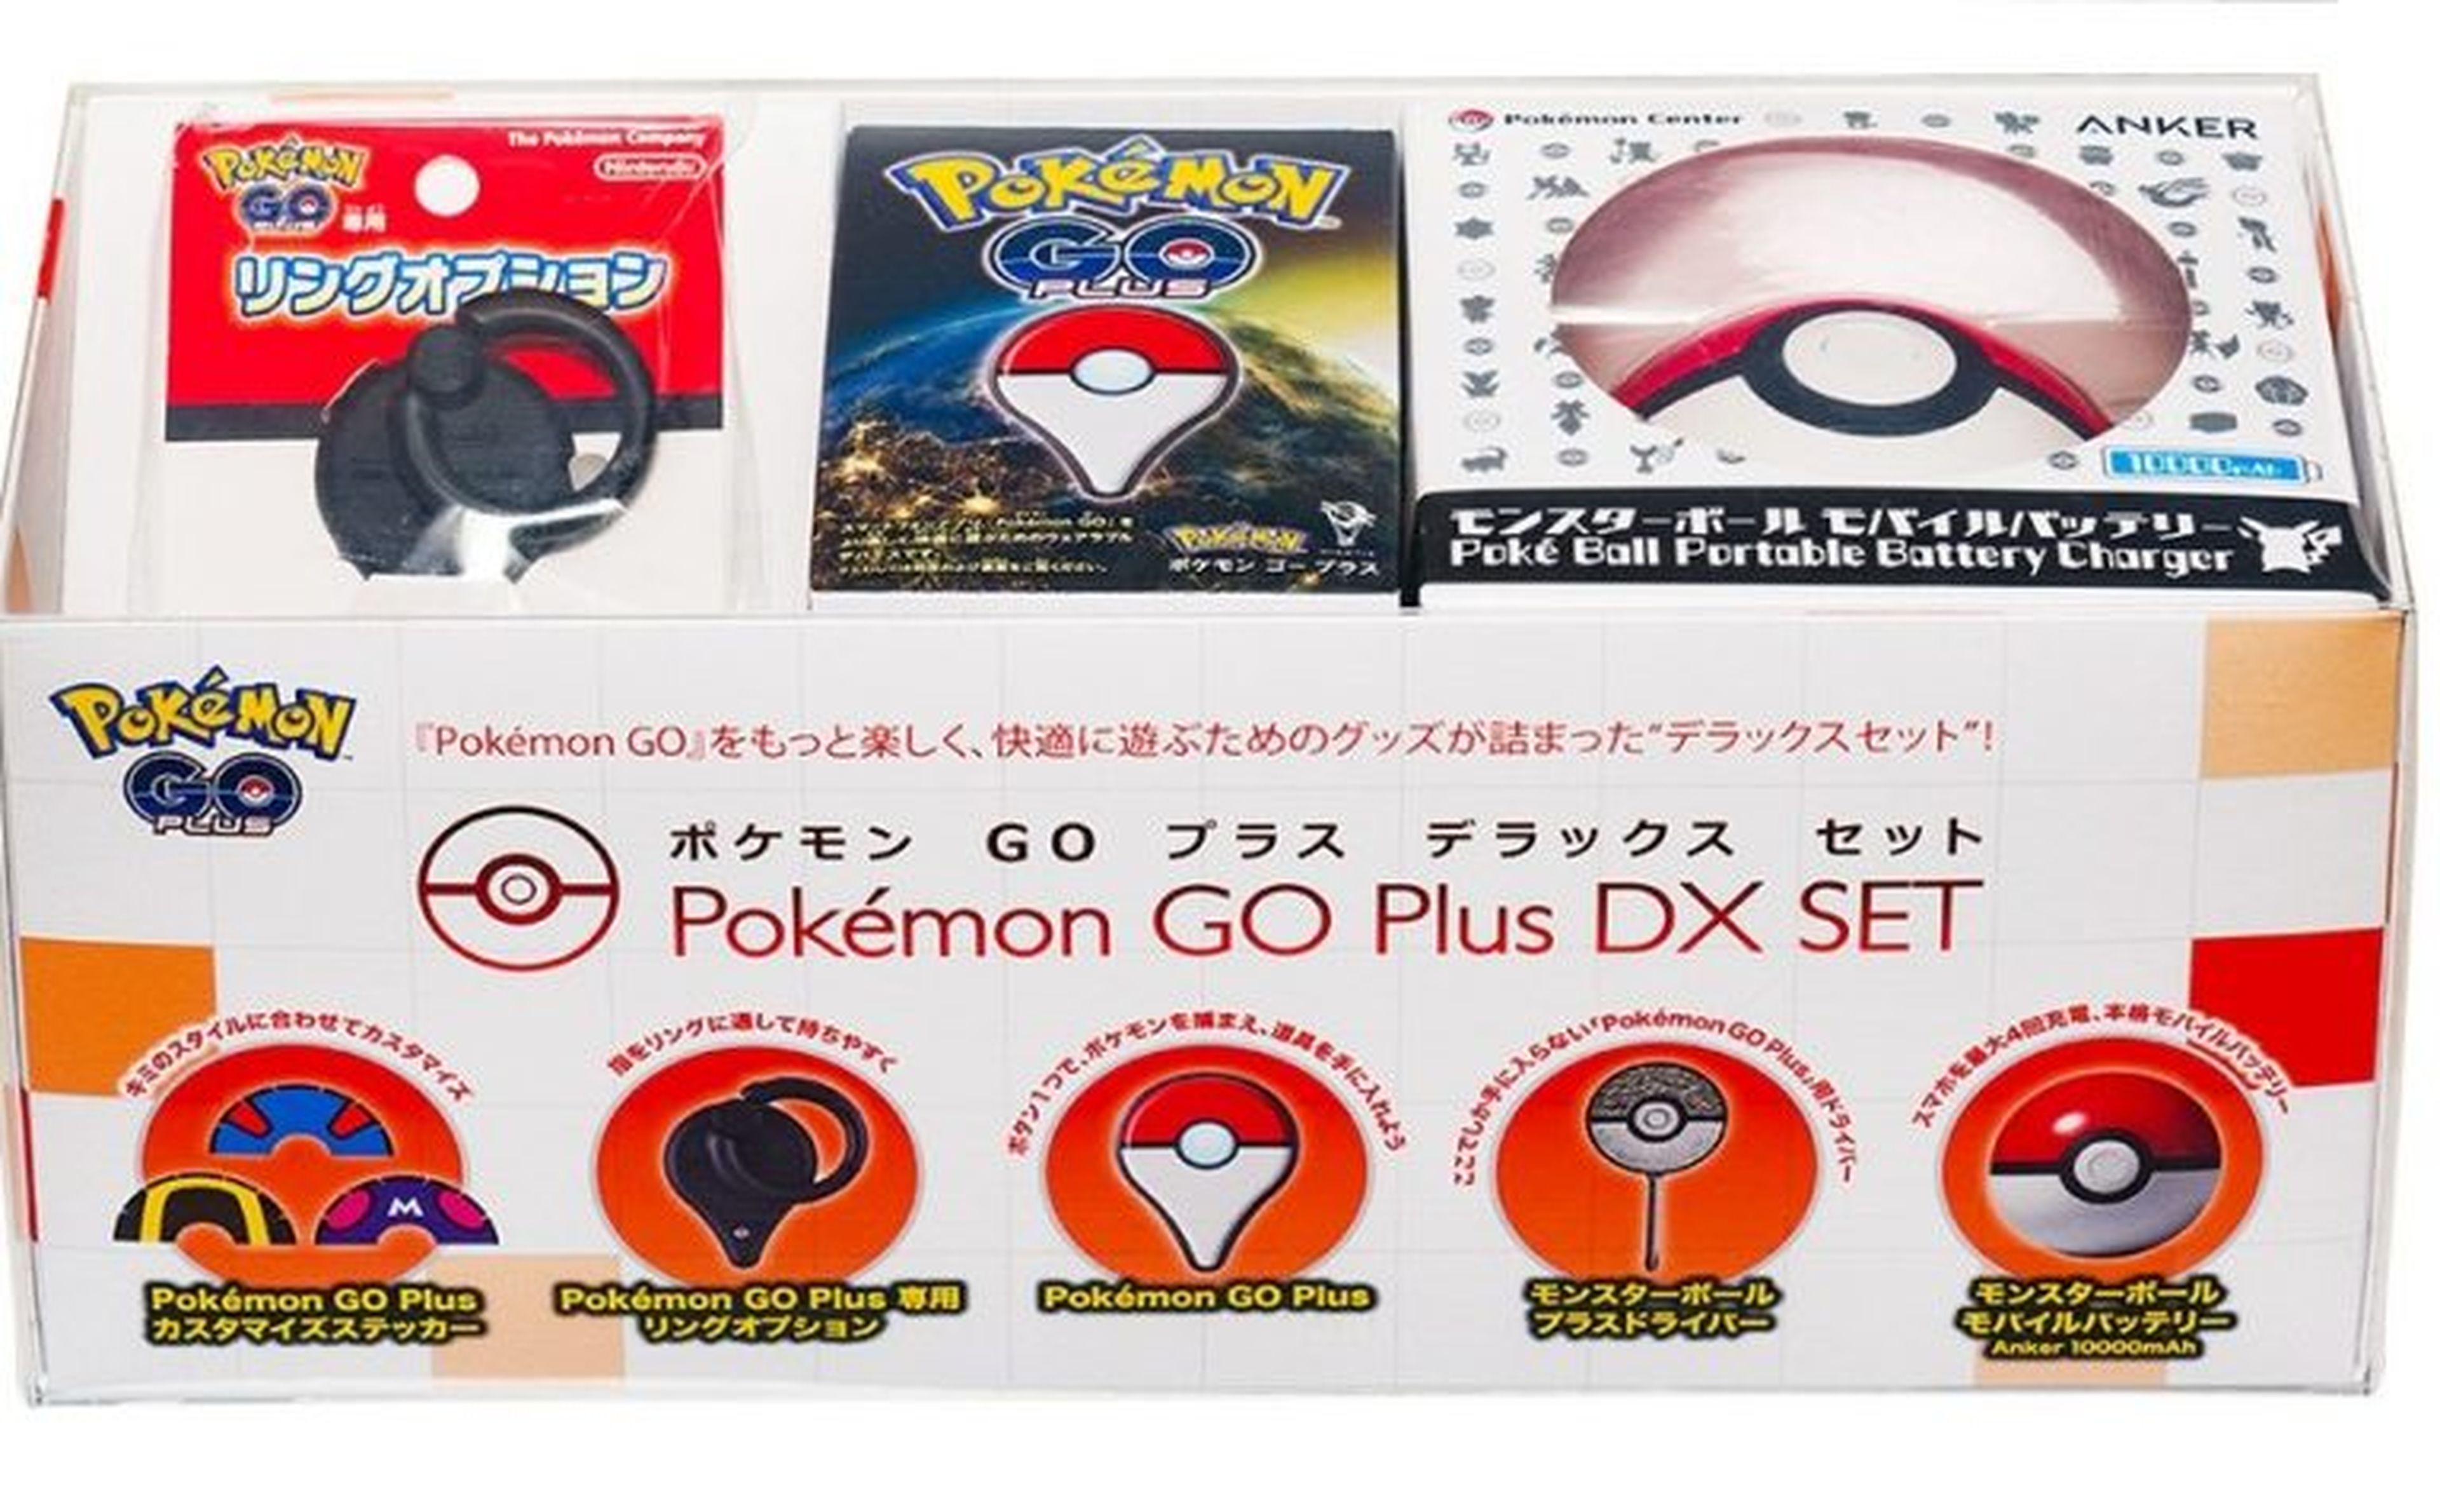 Pokémon GO Plus Deluxe